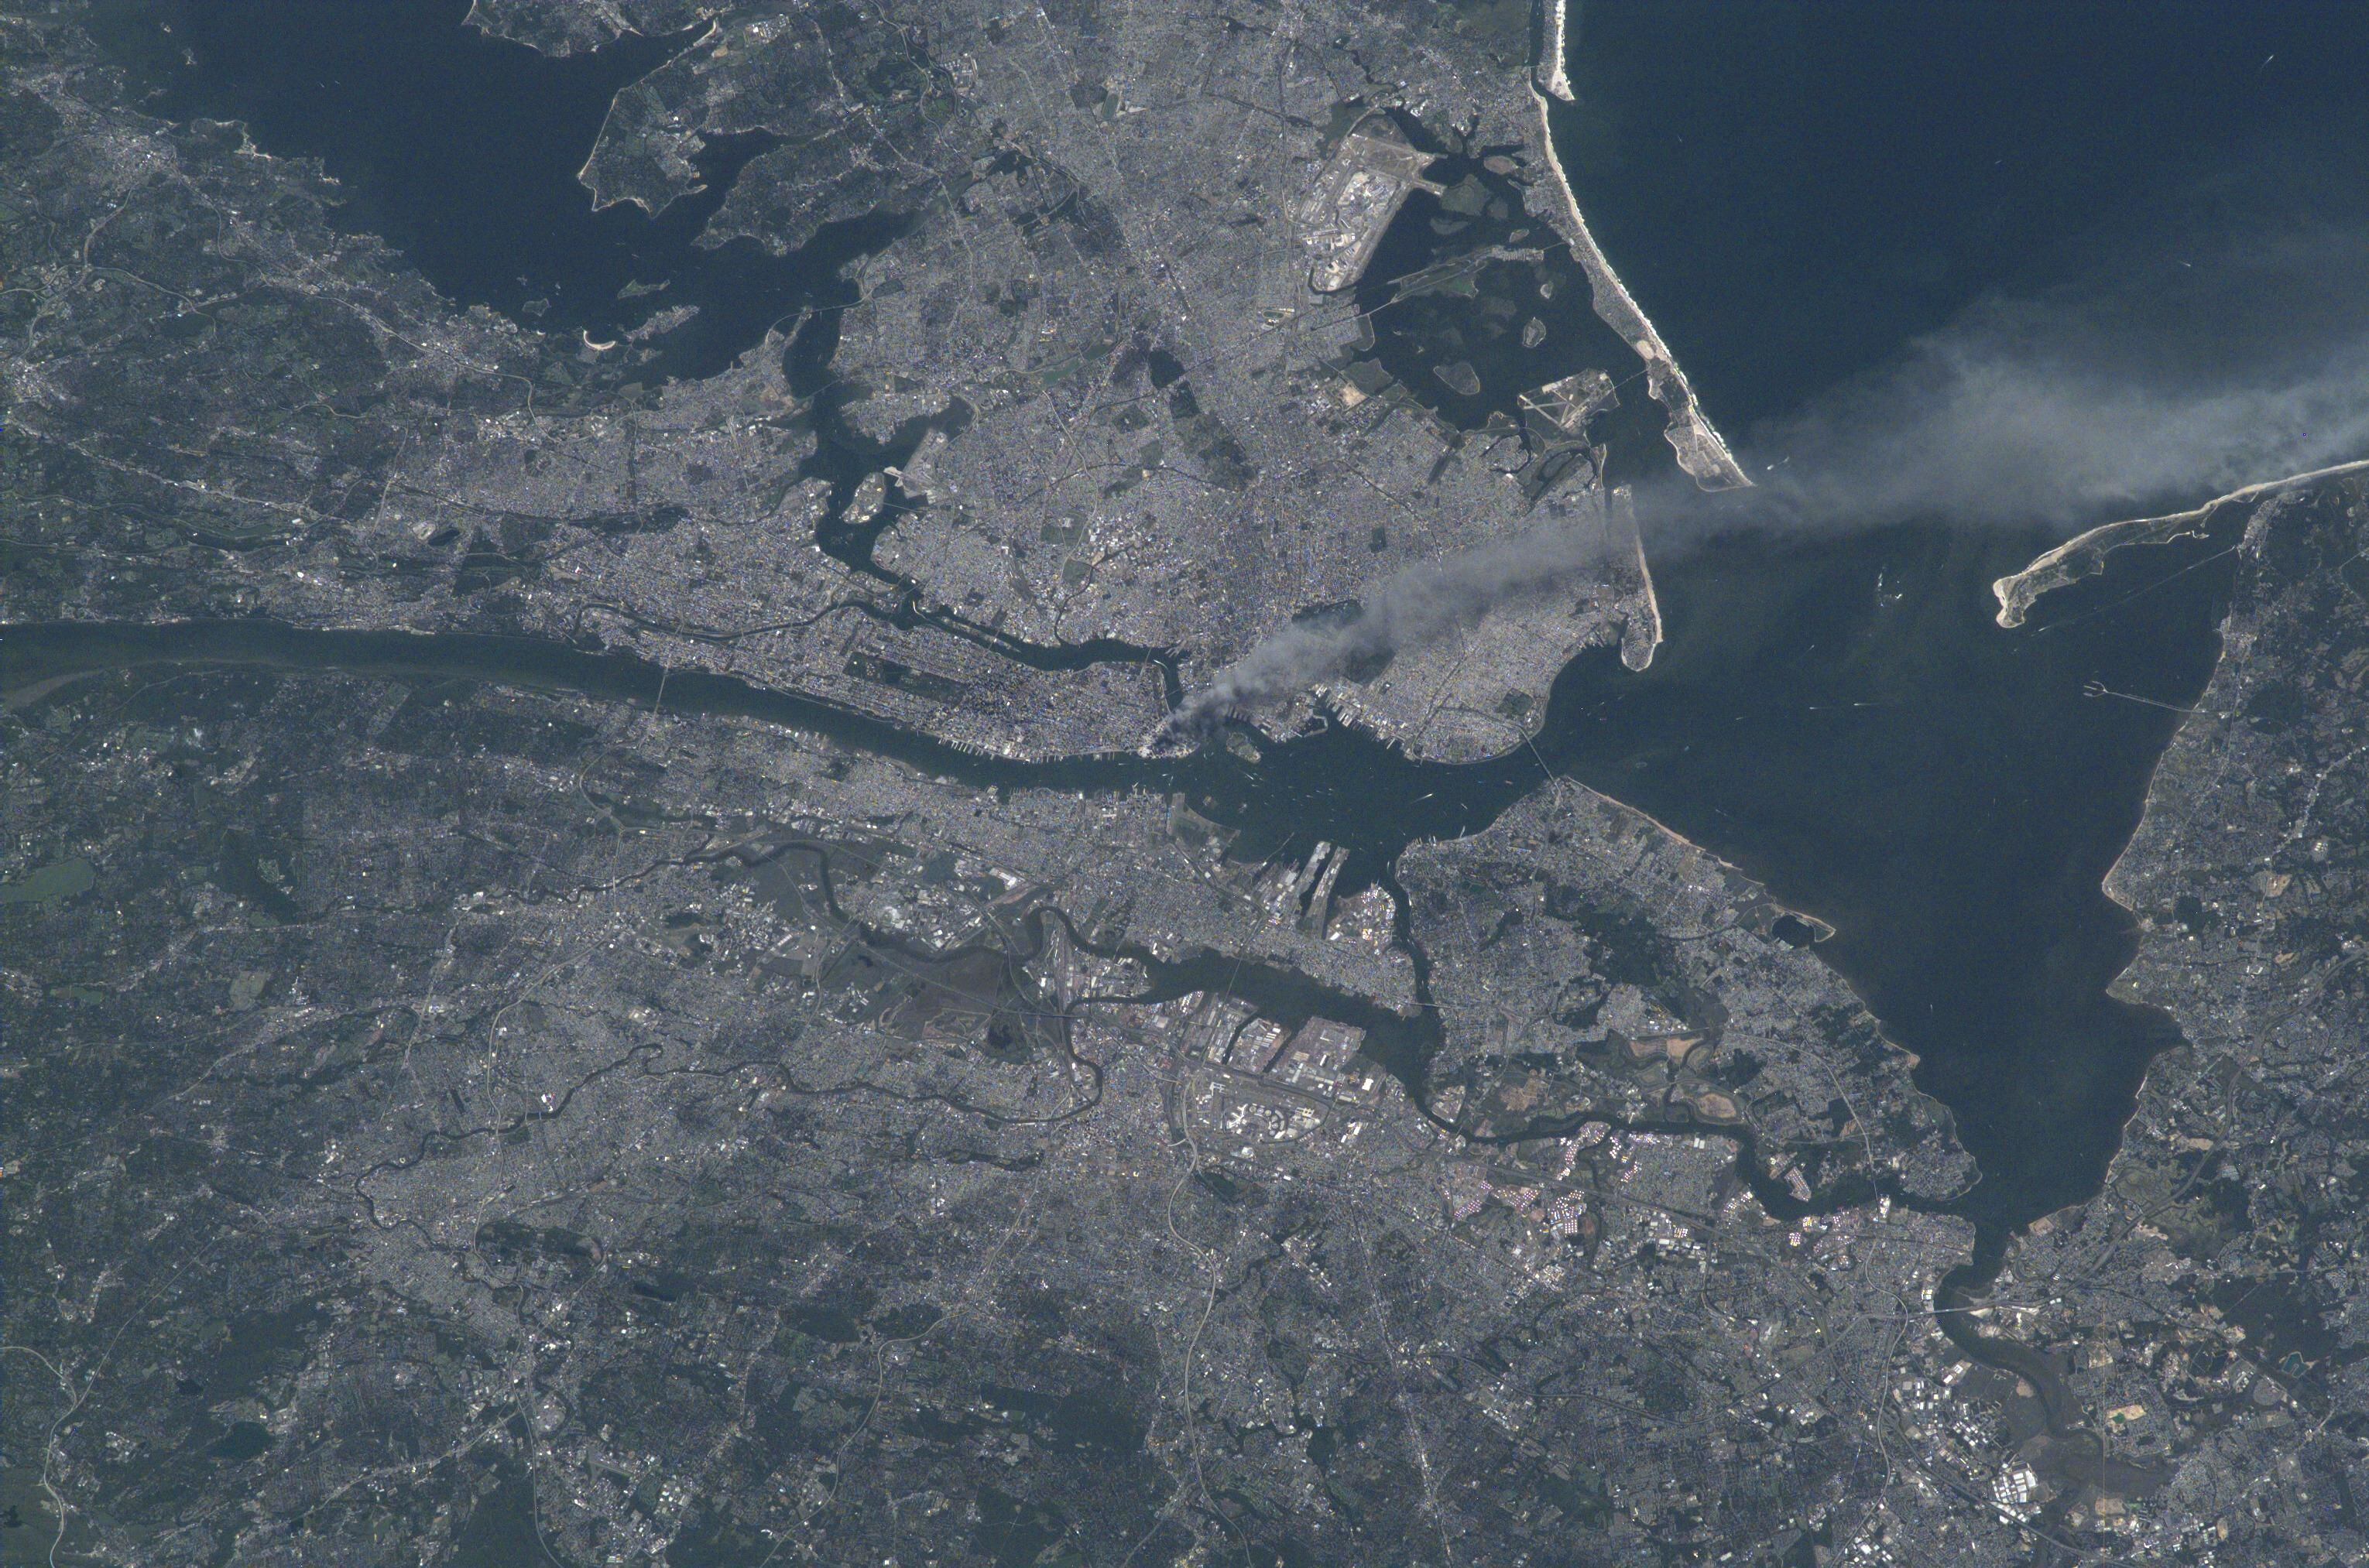 Imagen de Nueva York tomada desde la Estación Espacial Internacional, el 11 de septiembre de 2001, tras los atentados contra las Torres Gemelas.